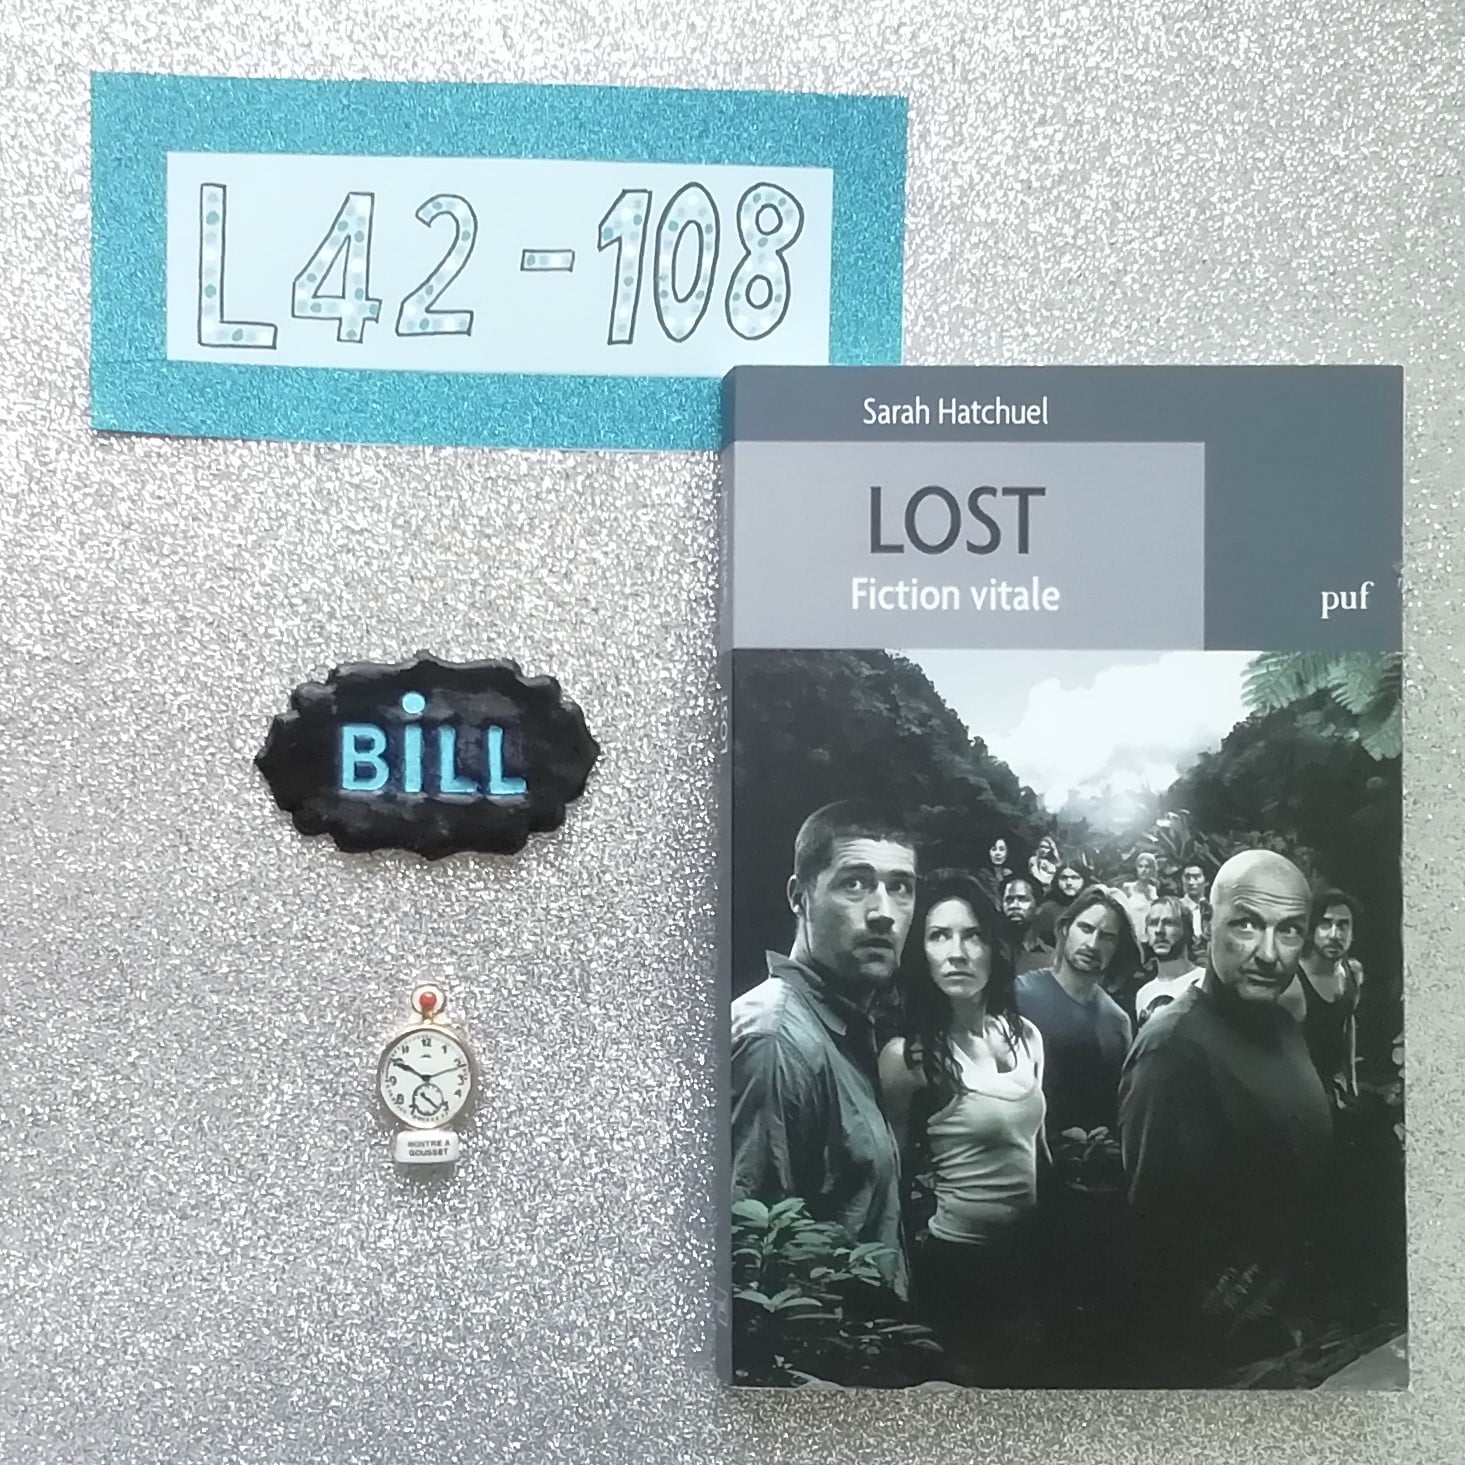 Le livre "Lost fiction vitale" se trouve à côté d'une fève qui représente une horloge. Au dessus, on retrouve également le prénom Bill réalisé en pâte polymer.